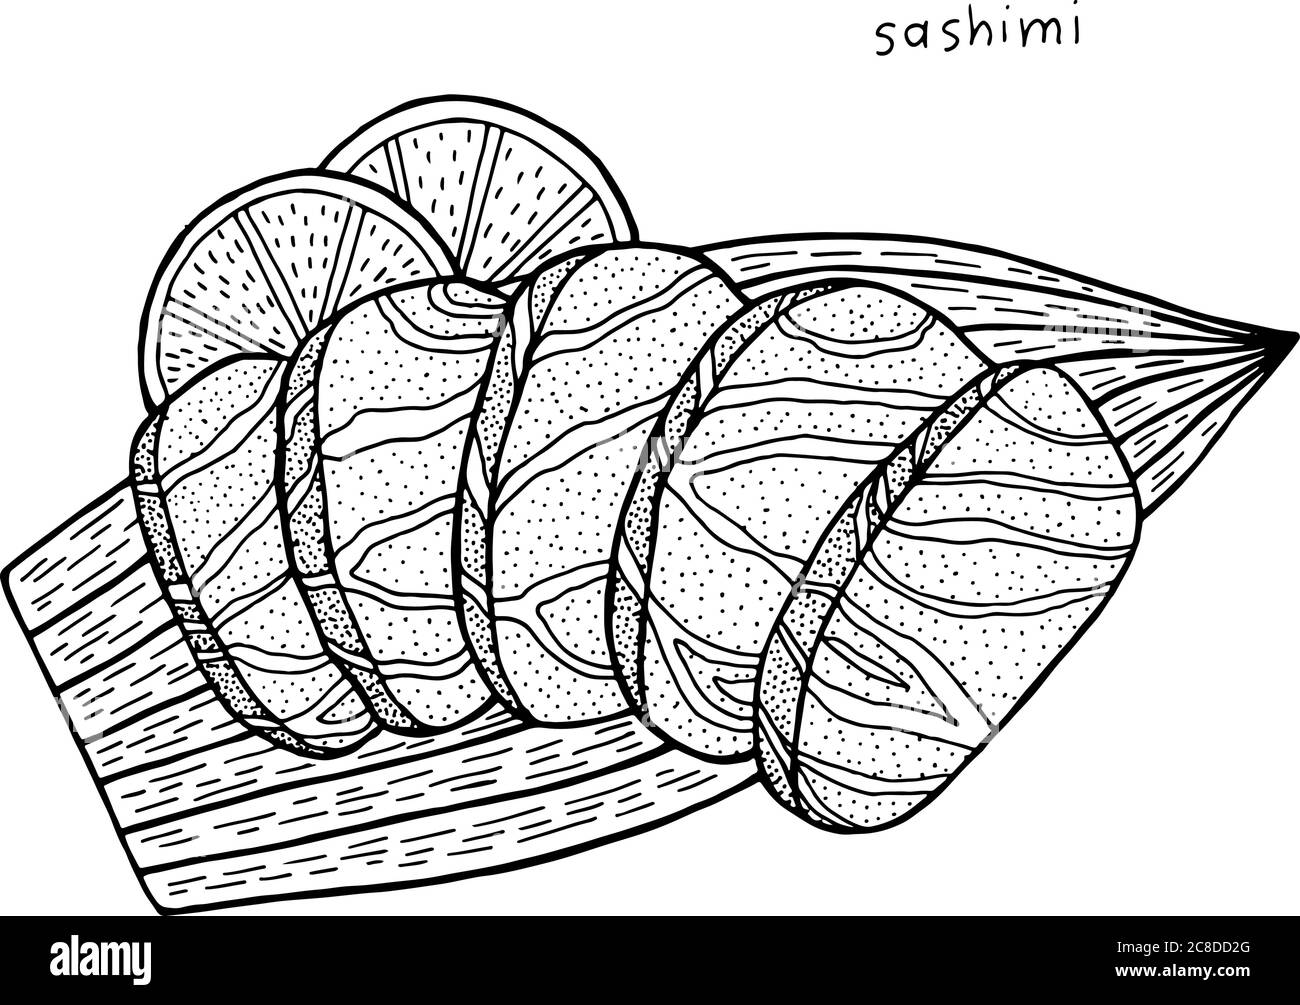 Sashimi - illustrazione giapponese dell'inchiostro alimentare. Grafica in bianco e nero. Pagina da colorare per adulti. Illustrazione vettoriale. Illustrazione Vettoriale